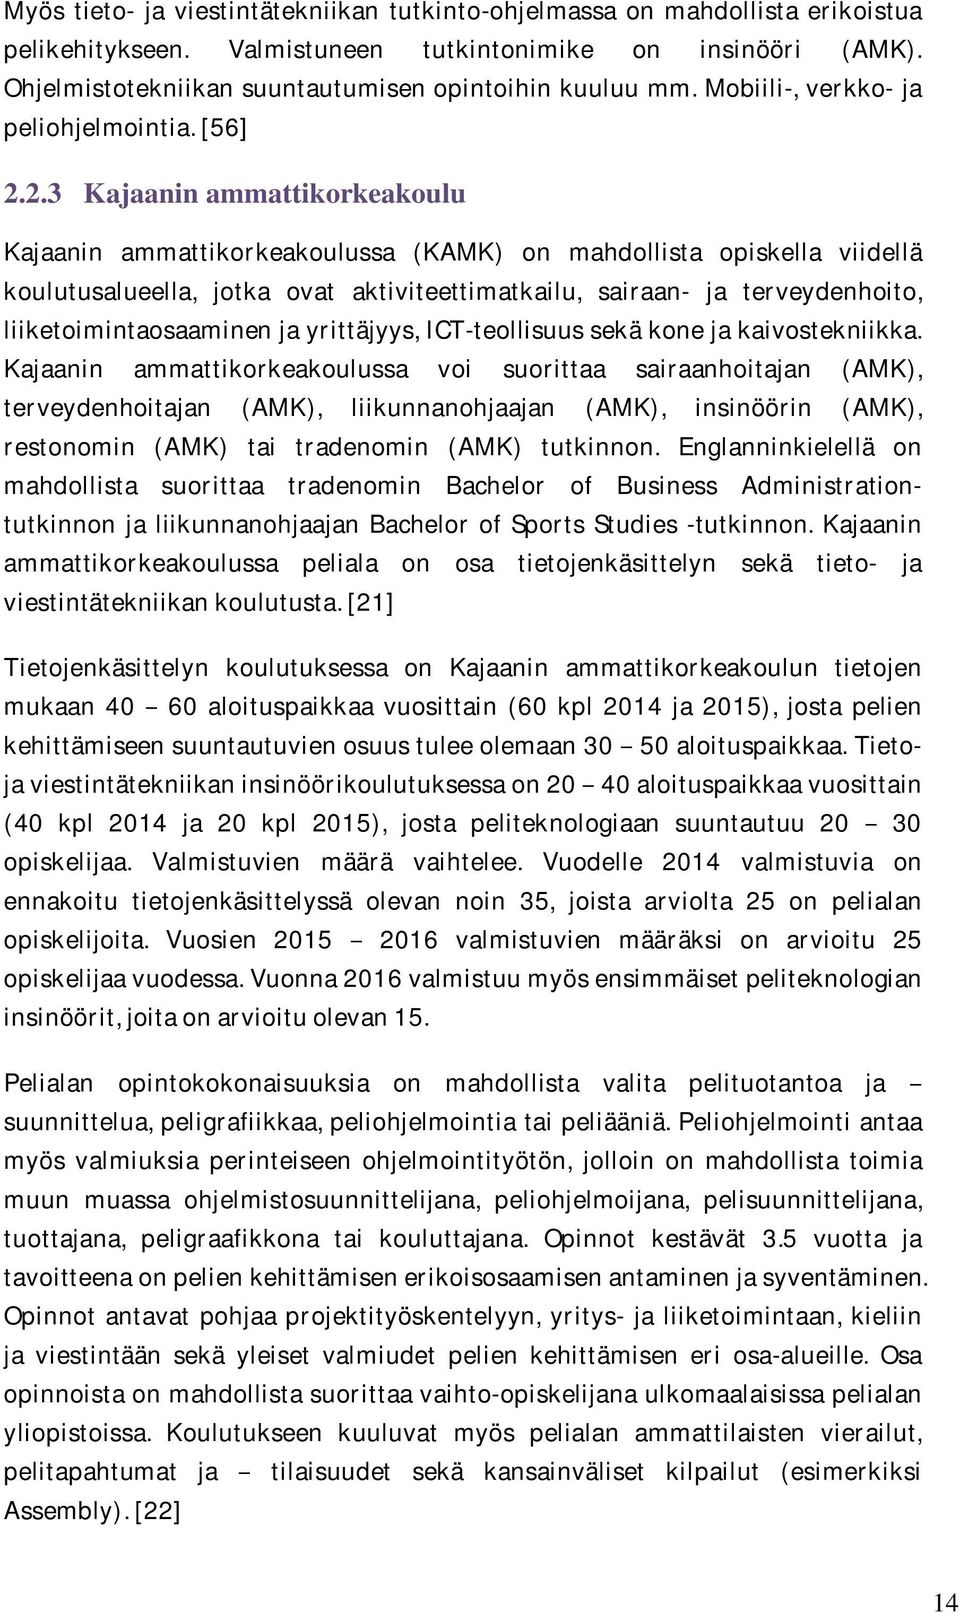 2.3 Kajaanin ammattikorkeakoulu Kajaanin ammattikorkeakoulussa (KAMK) on mahdollista opiskella viidellä koulutusalueella, jotka ovat aktiviteettimatkailu, sairaan- ja terveydenhoito,